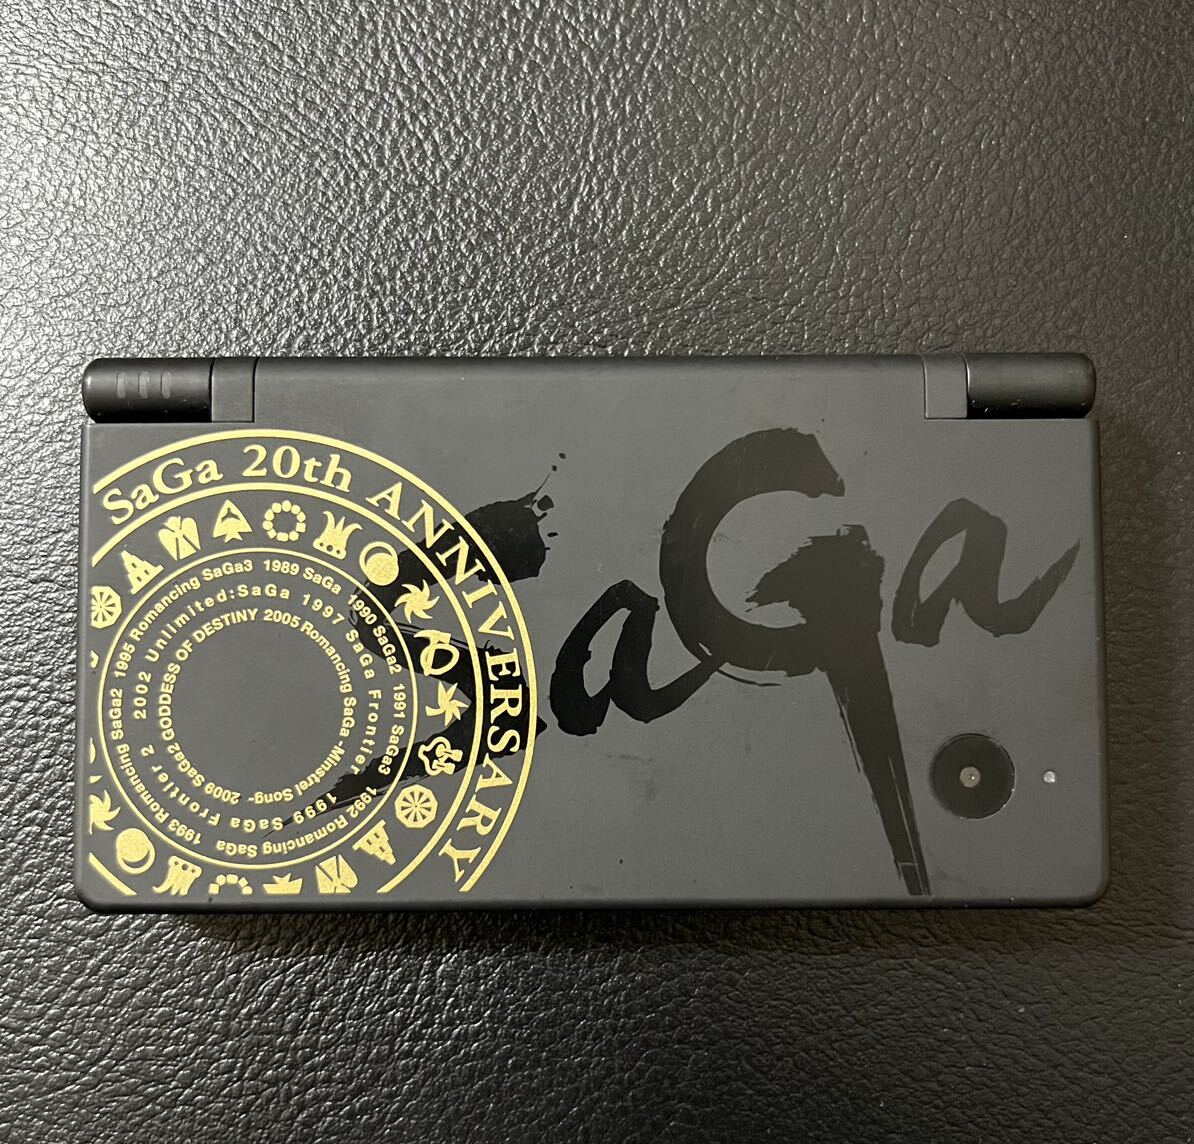  человек Nintendo DSi SaGa SAGA 20th корпус только рабочее состояние подтверждено * SAGA 20 anniversary commemoration ограниченная модель 